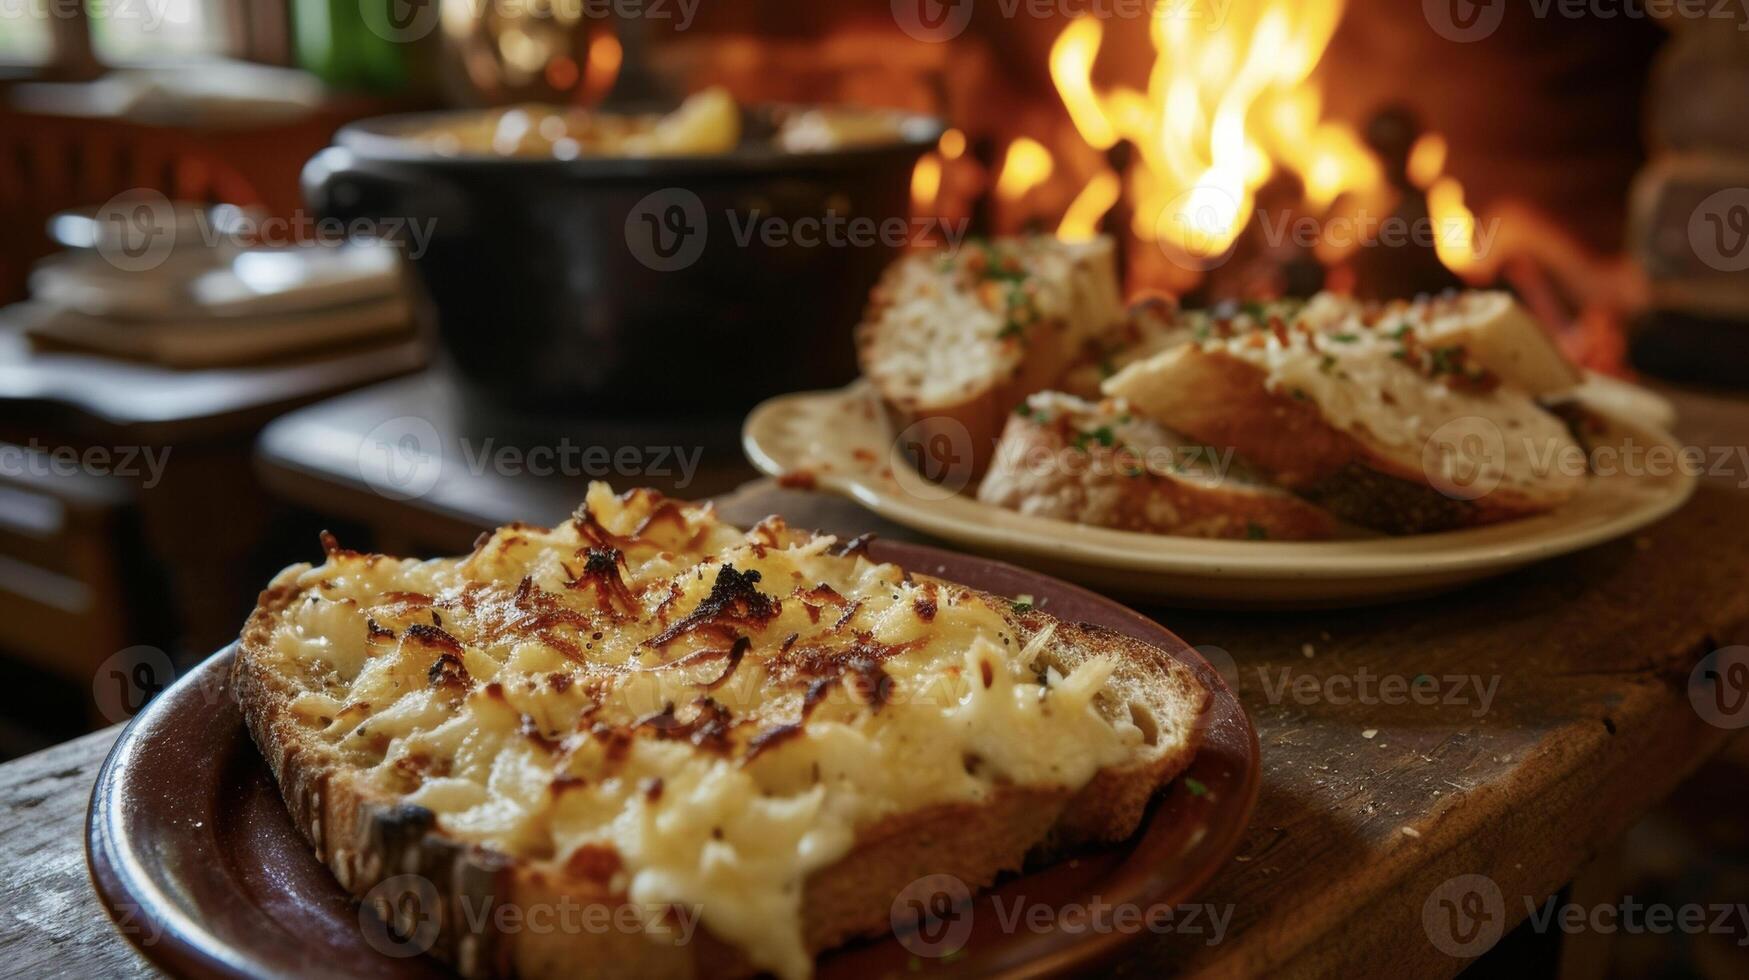 reunir alrededor el fuego y saborear un plato de tostado un pan untado en un sabroso queso mezcla y dorado a perfección un por excelencia gusto de galés cocina foto